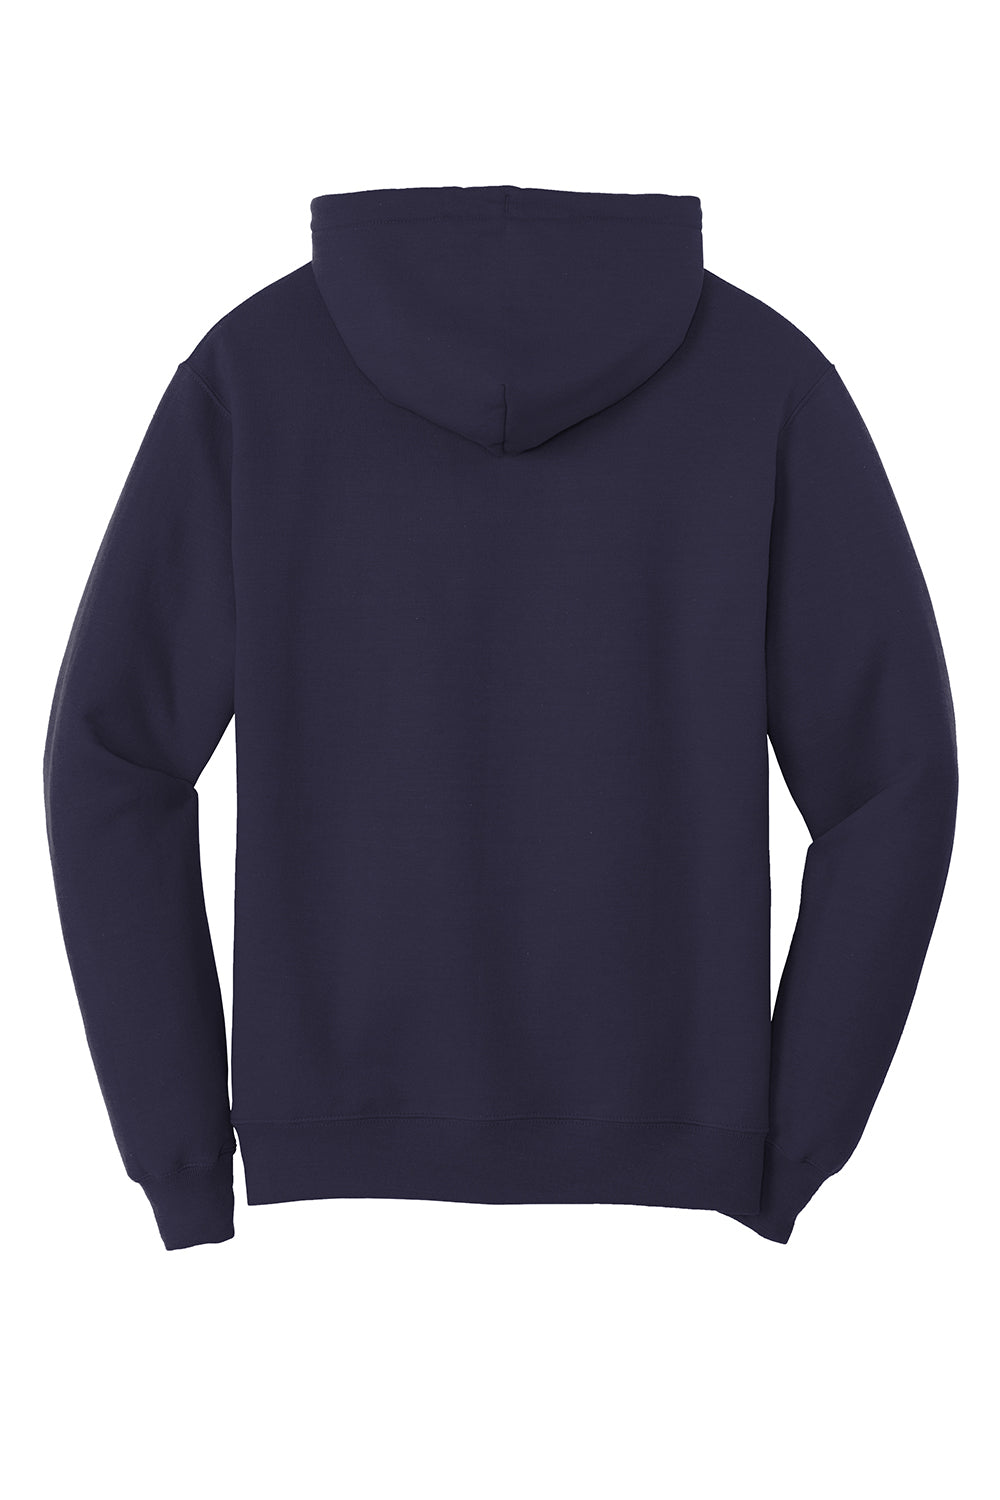 Port & Company PC78H/PC78HT Mens Core Fleece Hooded Sweatshirt Hoodie True Navy Blue Flat Back